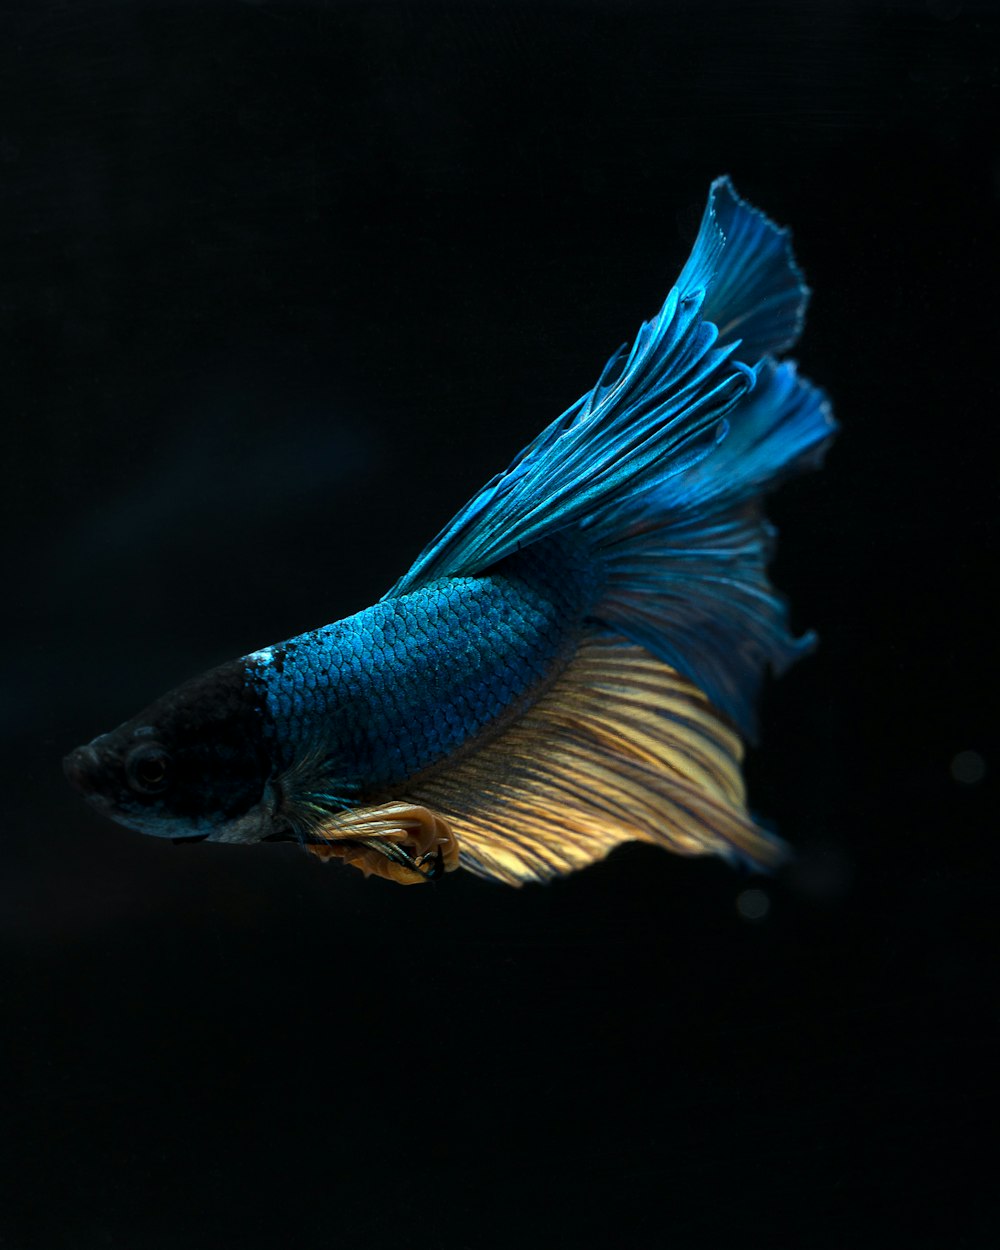 a blue siamese fish swimming in the dark